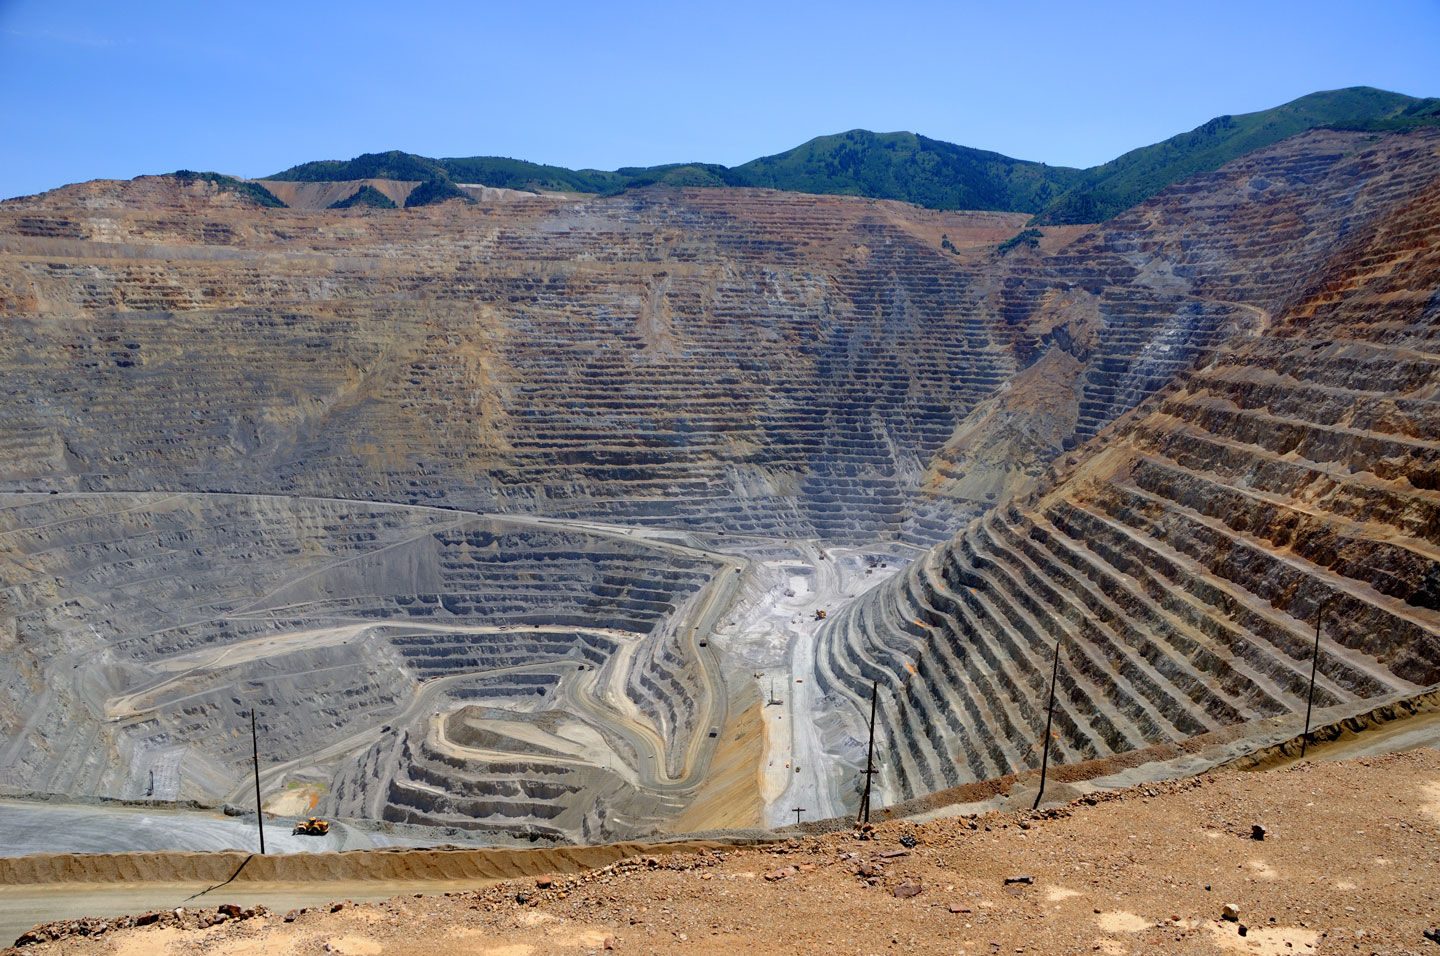 Le Maroc se positionne dans le top 10 du classement mondial des juridictions les plus attractives pour les investissements miniers